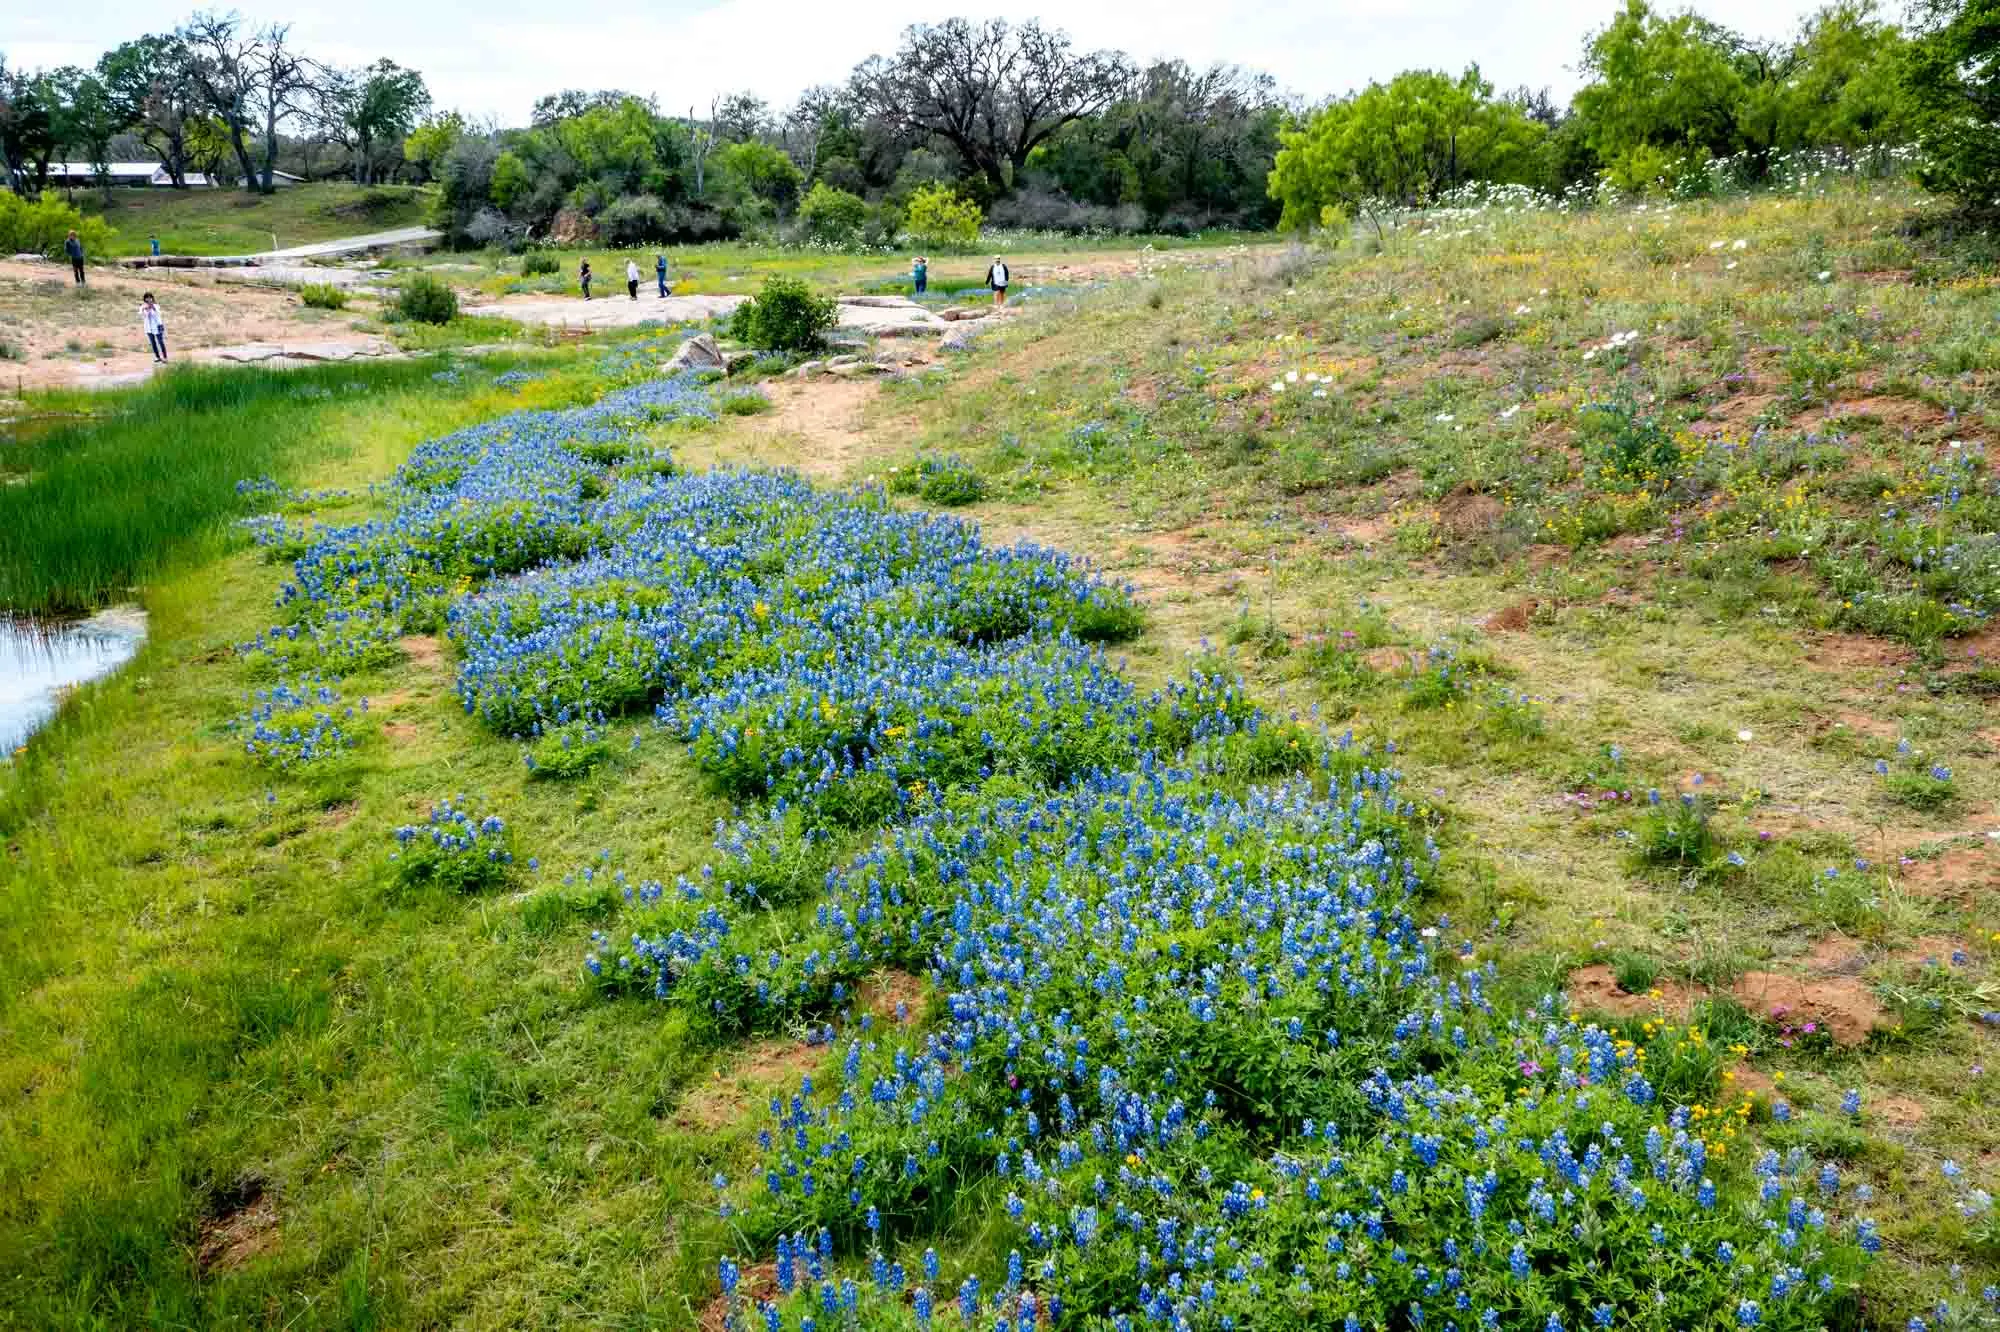 Texas bluebonnet wildflowers on hillside